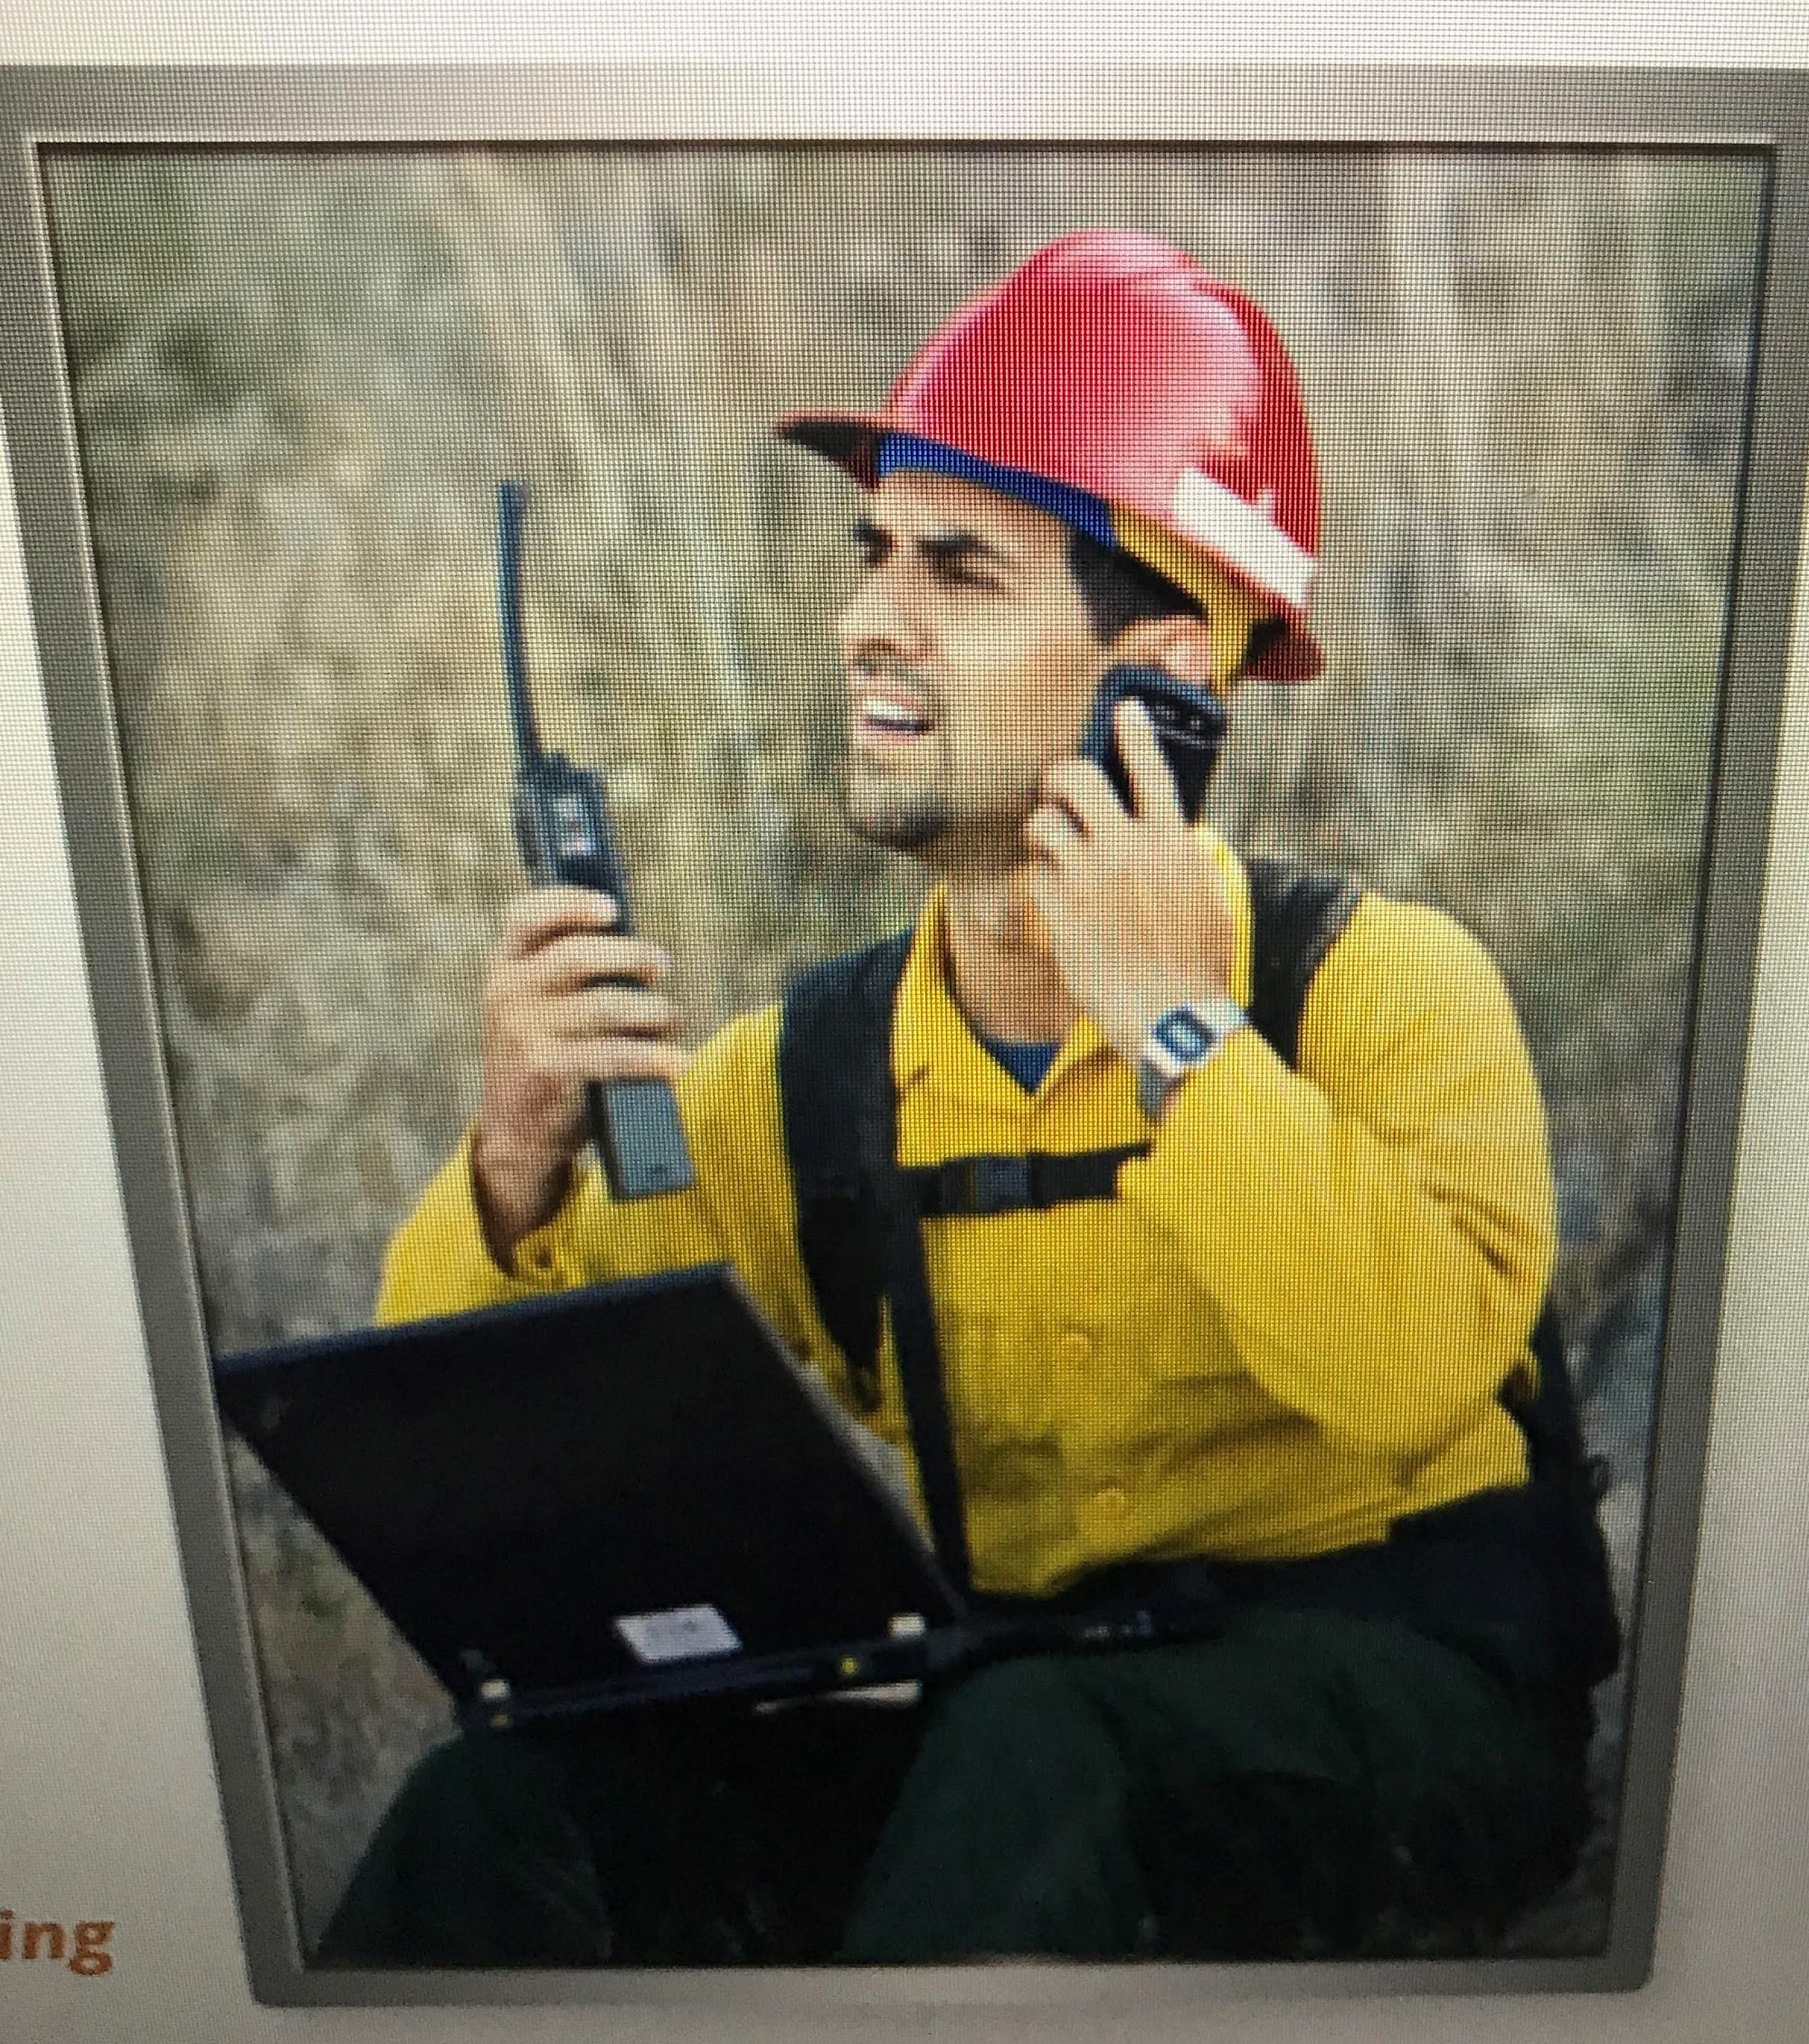 man on handheld radio looking confused